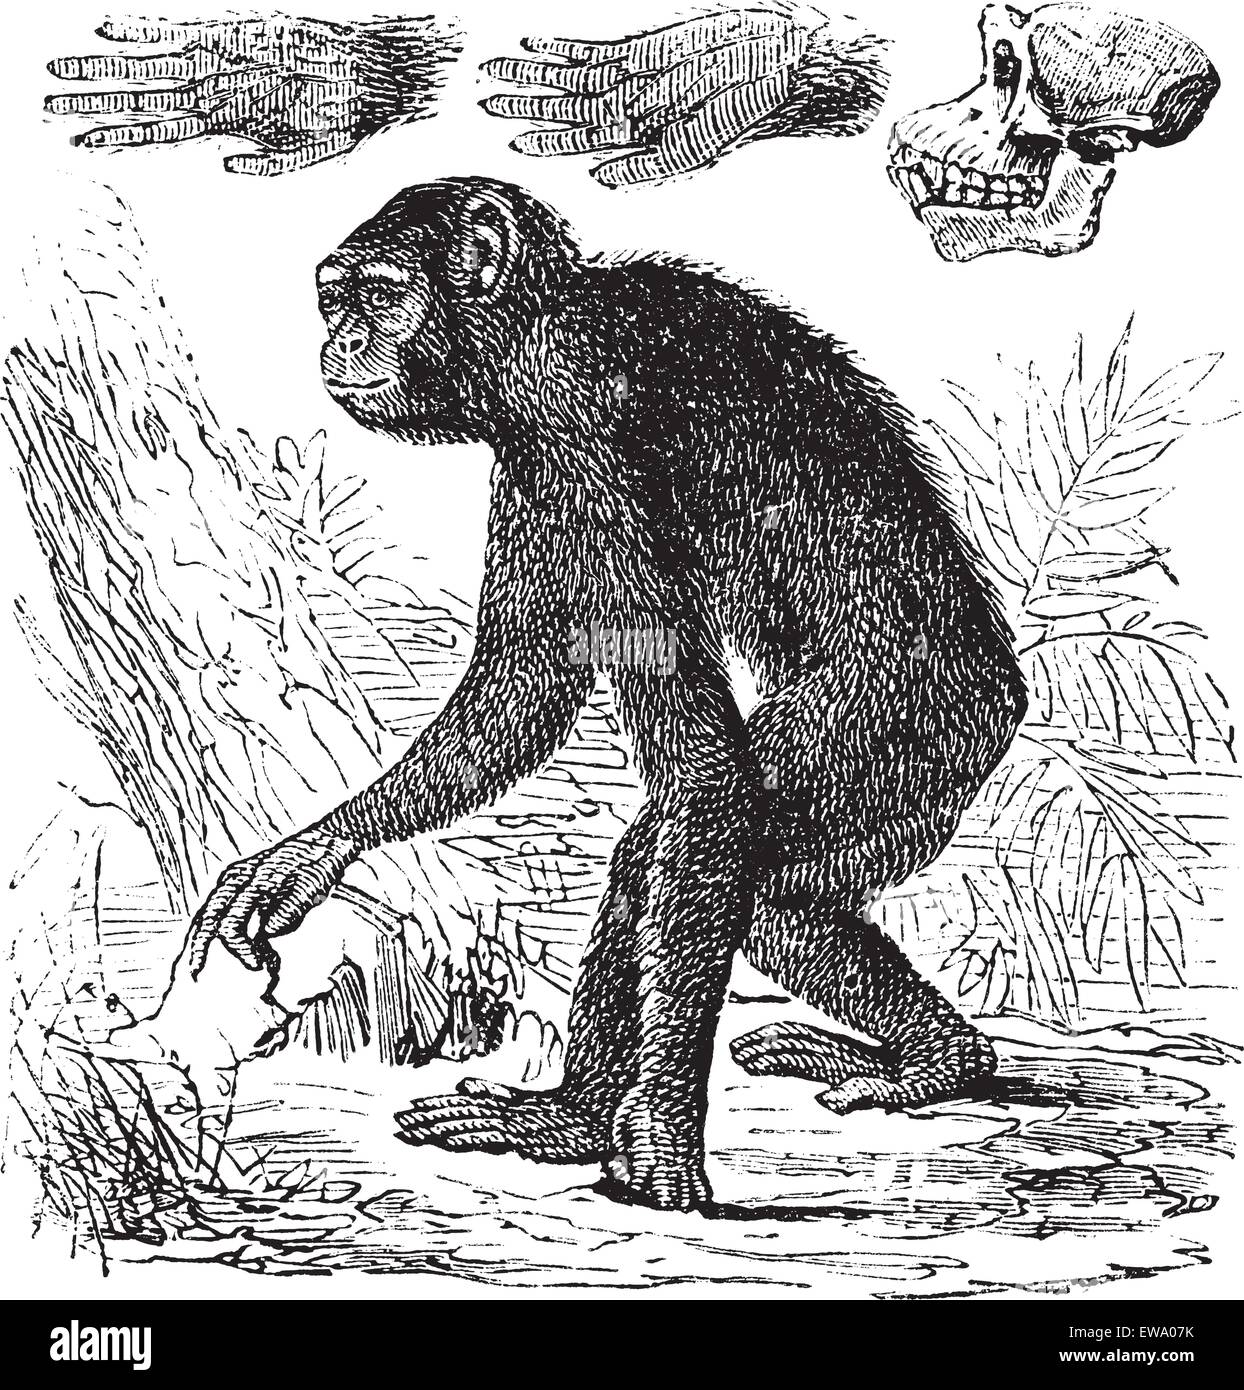 Ou chimpanzé Pan troglodytes, gravure d'époque. Vieille illustration gravée d'un chimpanzé. Illustration de Vecteur